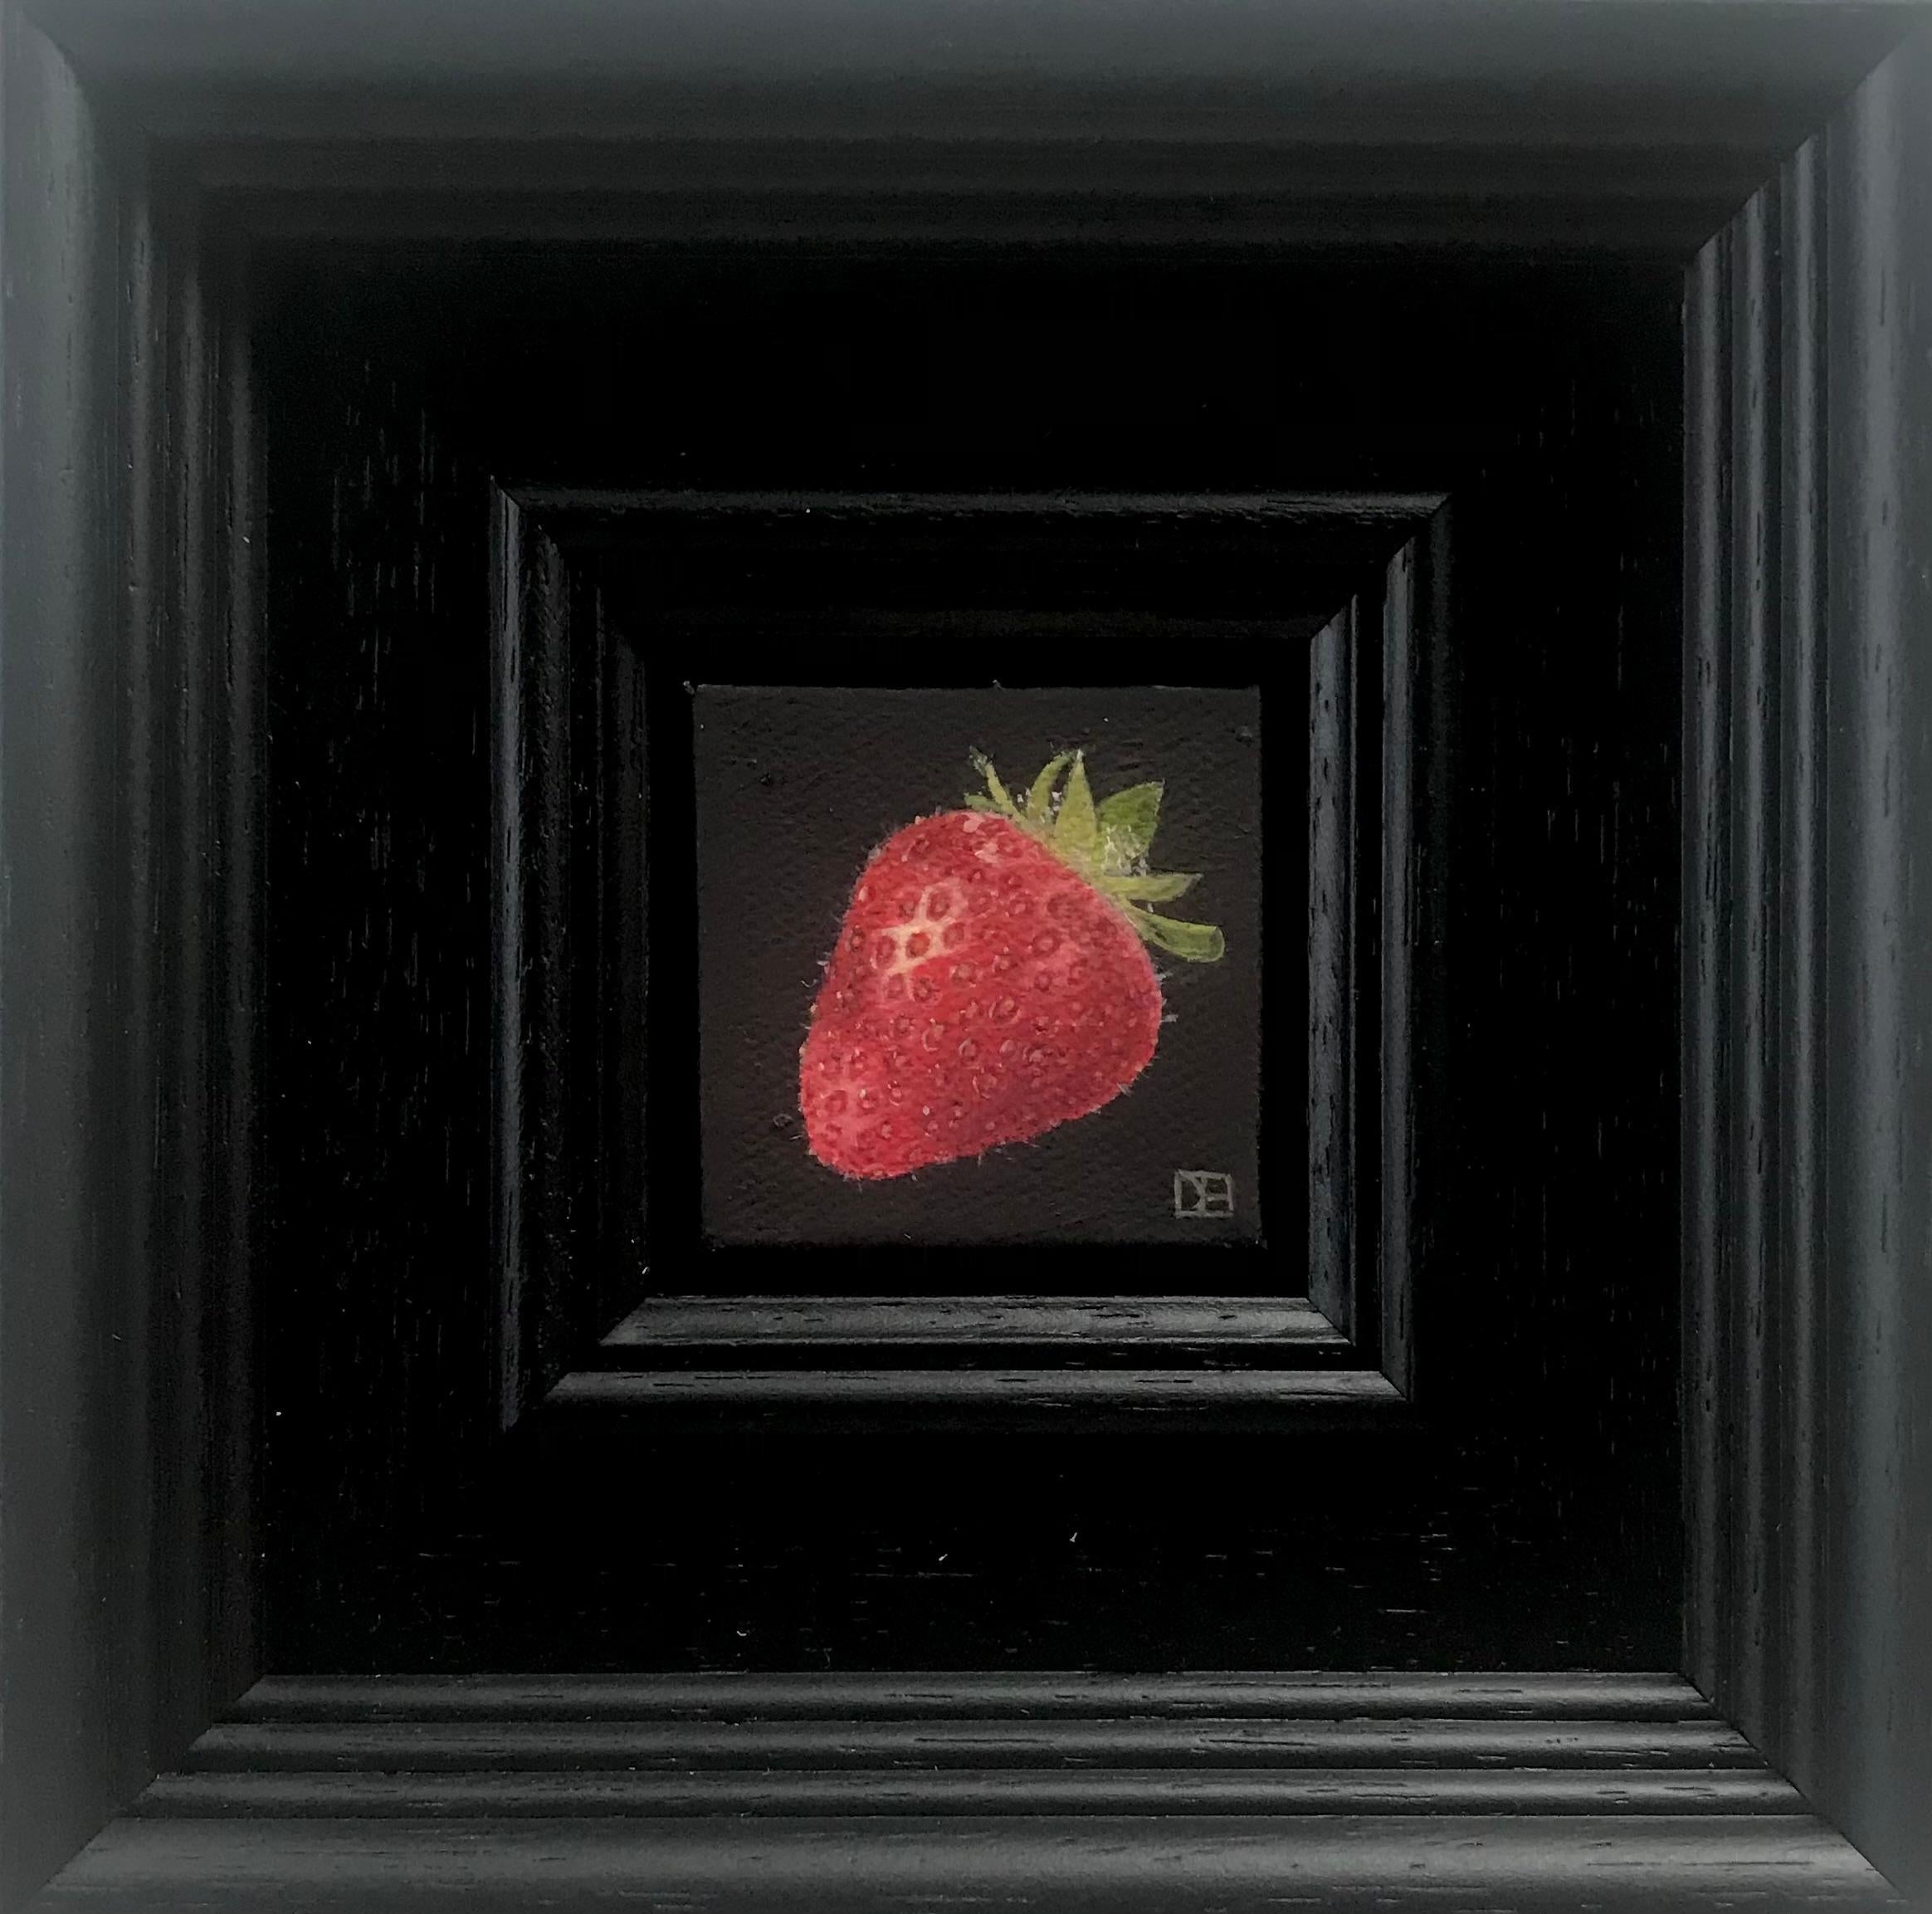 Taschen-Erdbeere  von Dani Humberstone, Stillleben, zeitgenössische, realistische Kunst (Schwarz), Figurative Painting, von Dani Humberstone 